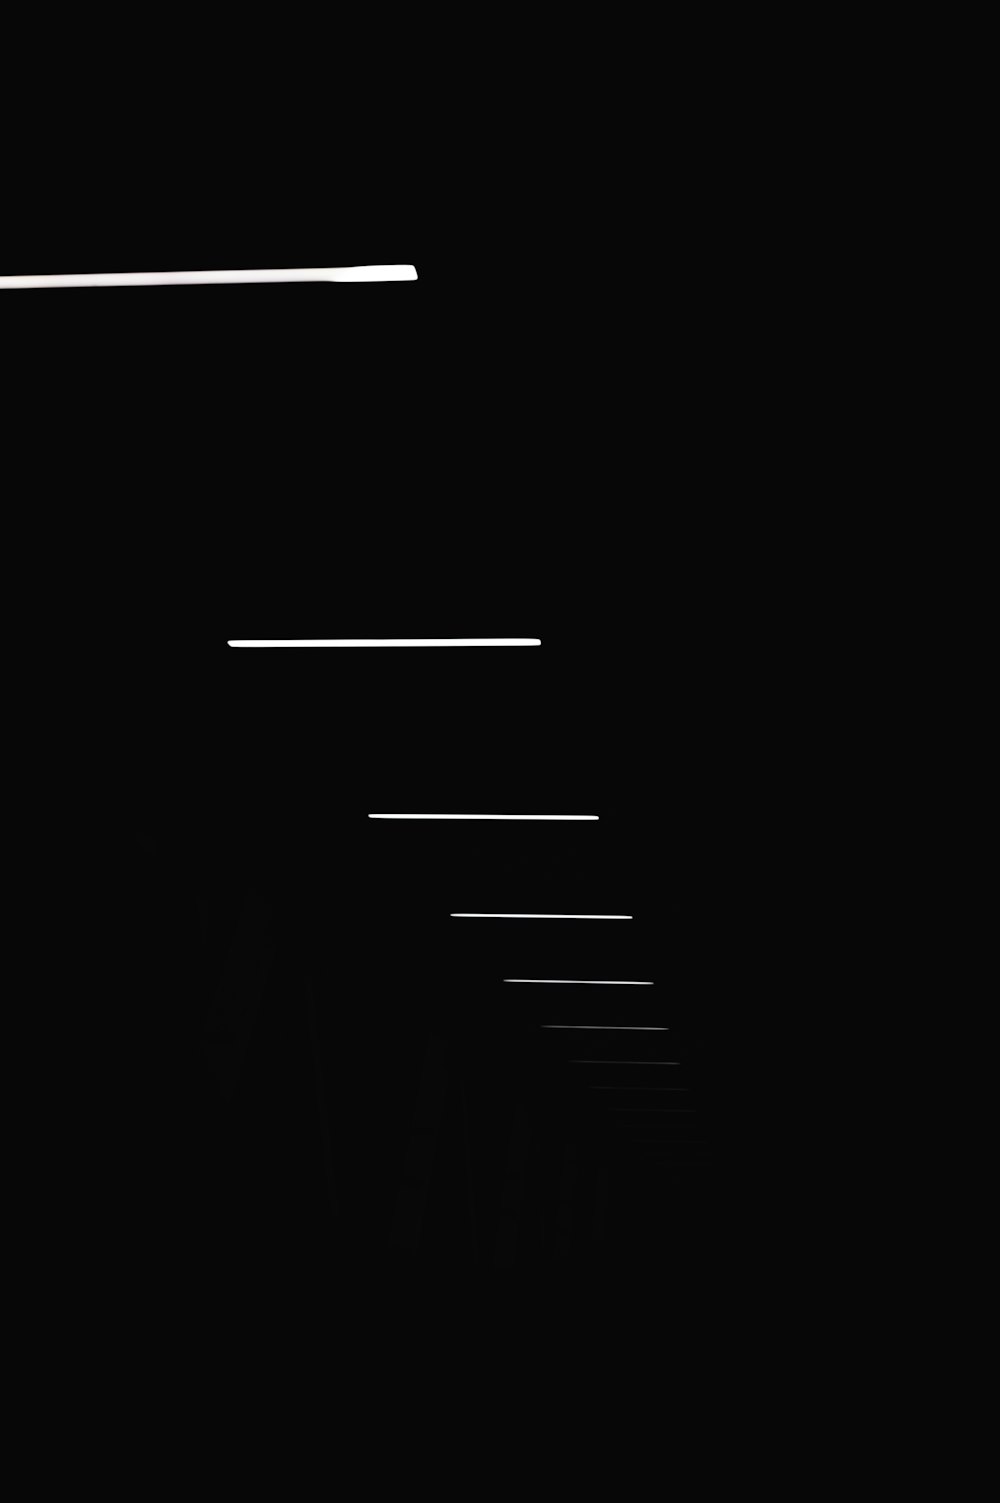 black and white line illustration